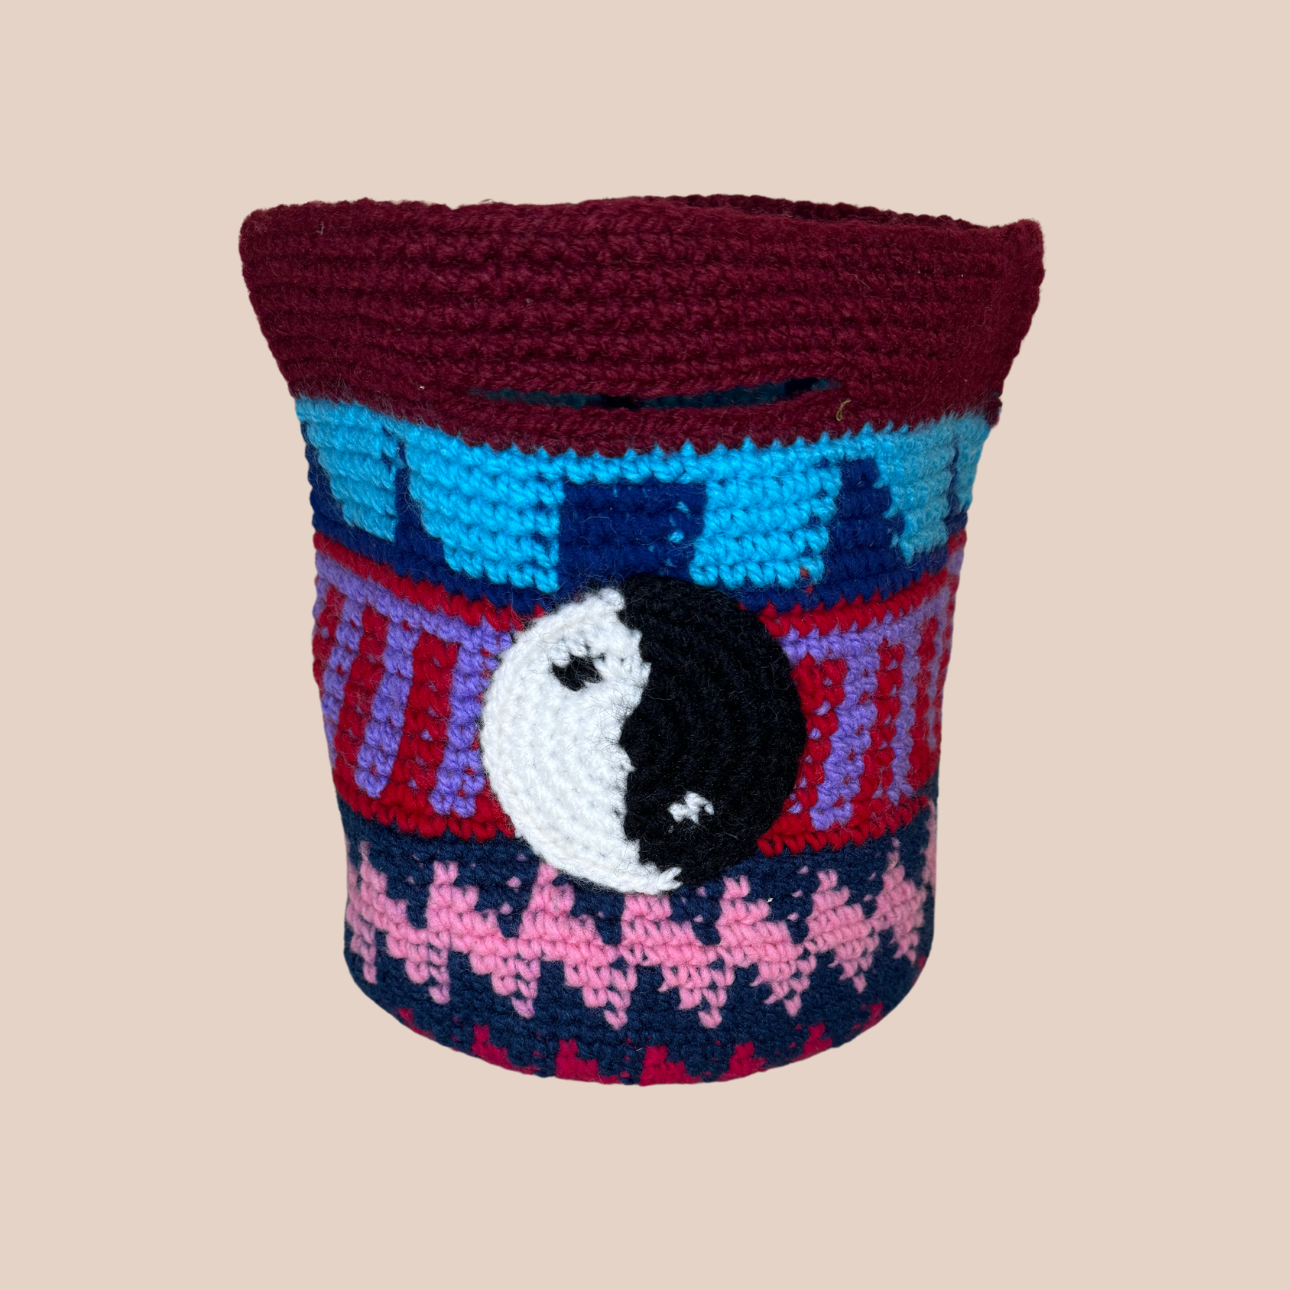 Image du sac motifs yin yang de Maison Badigo, sac en laine crocheté multicolore unique et tendance